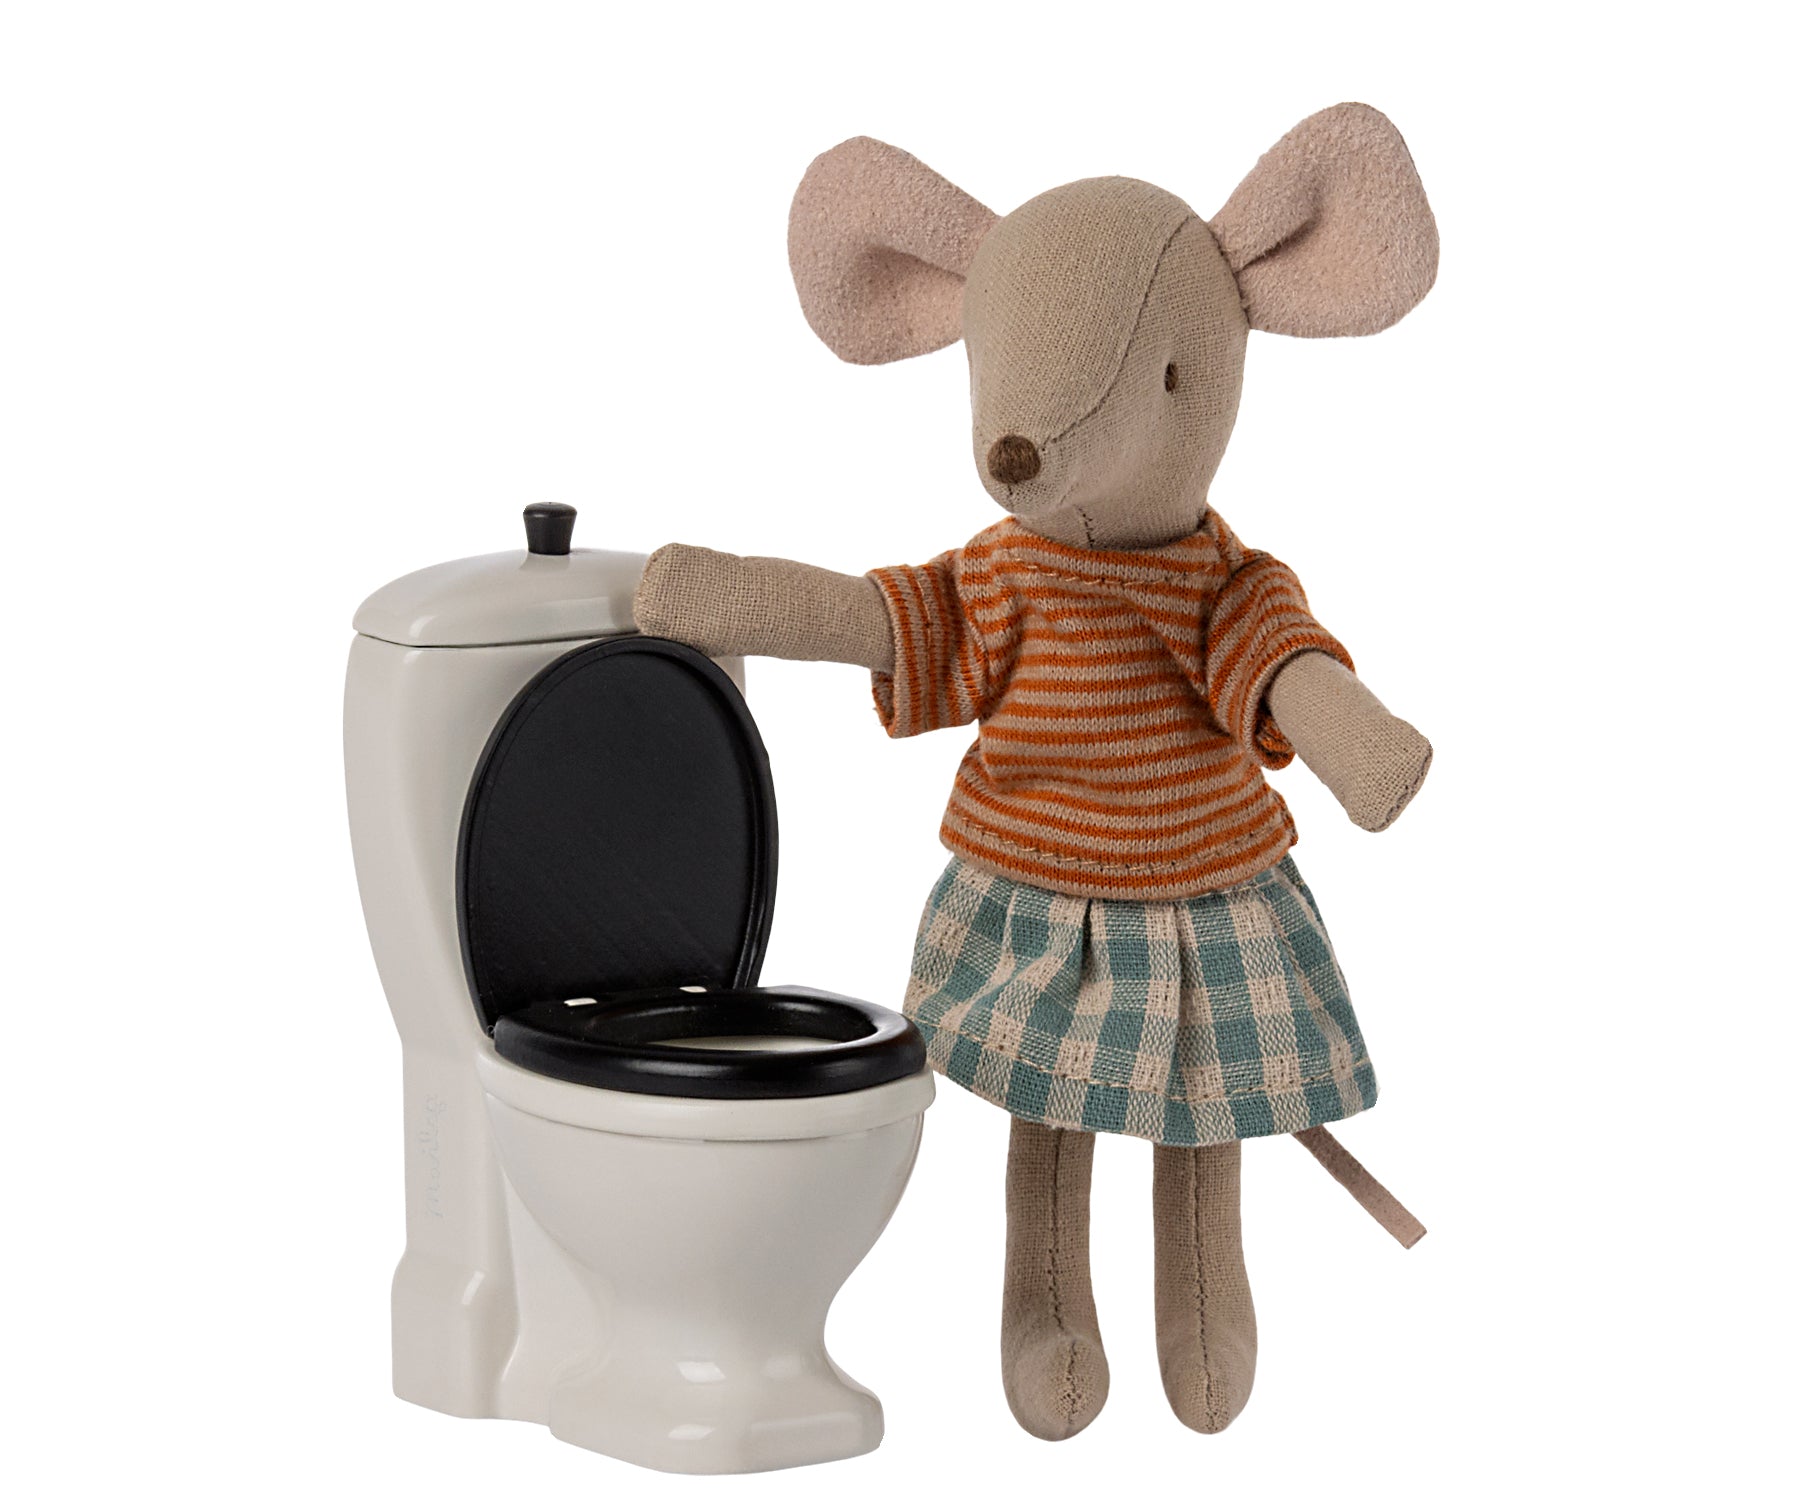 Maileg-Toilet-Mouse-11-3112-00